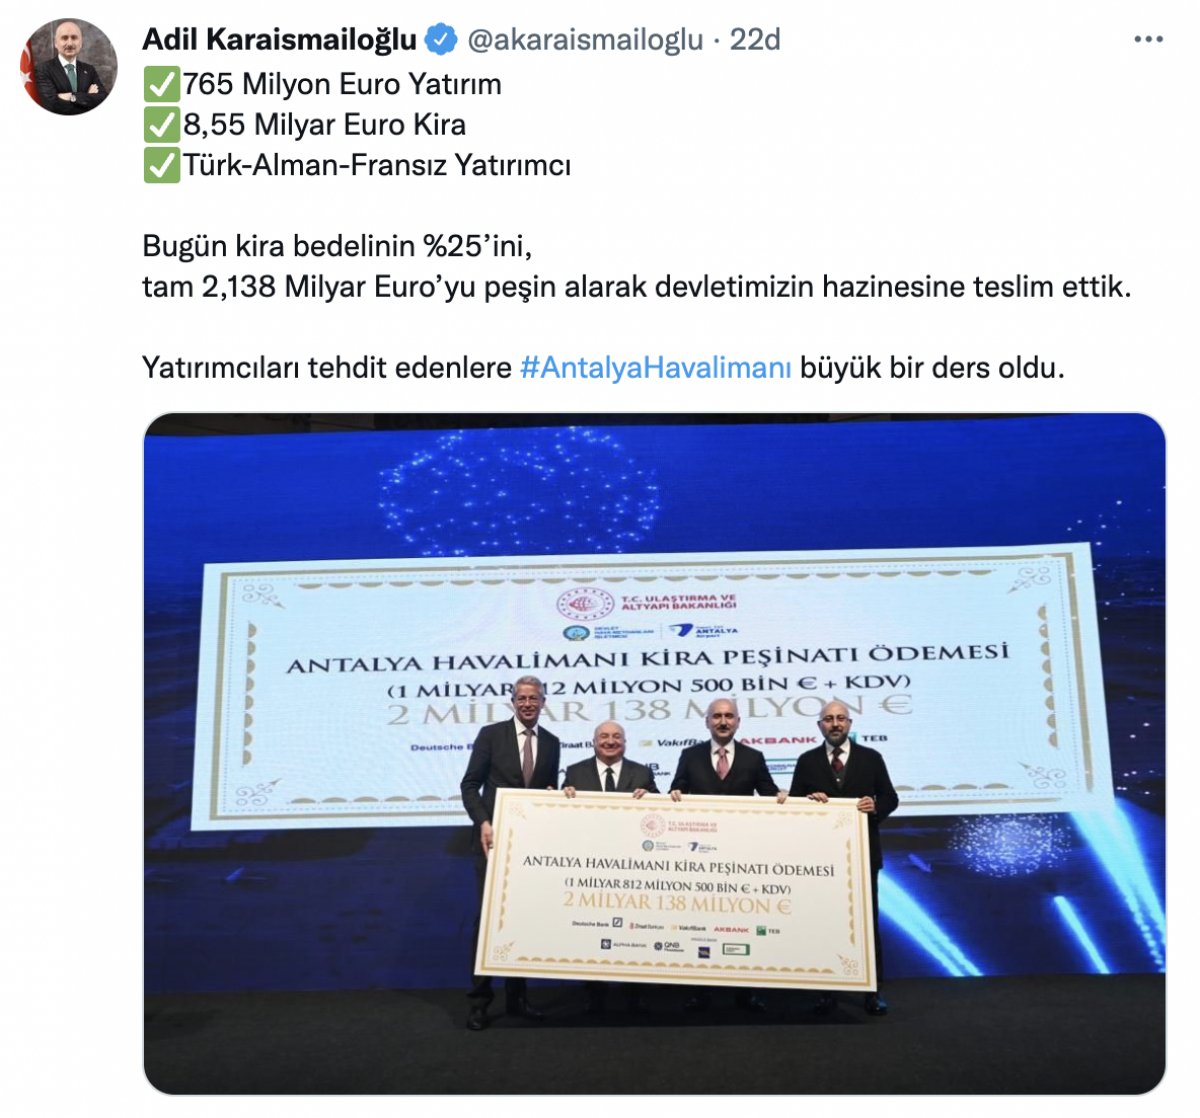 Adil Karaismailoğlu: Antalya Havalimanı kira bedelinin ilk taksidi ödendi #9